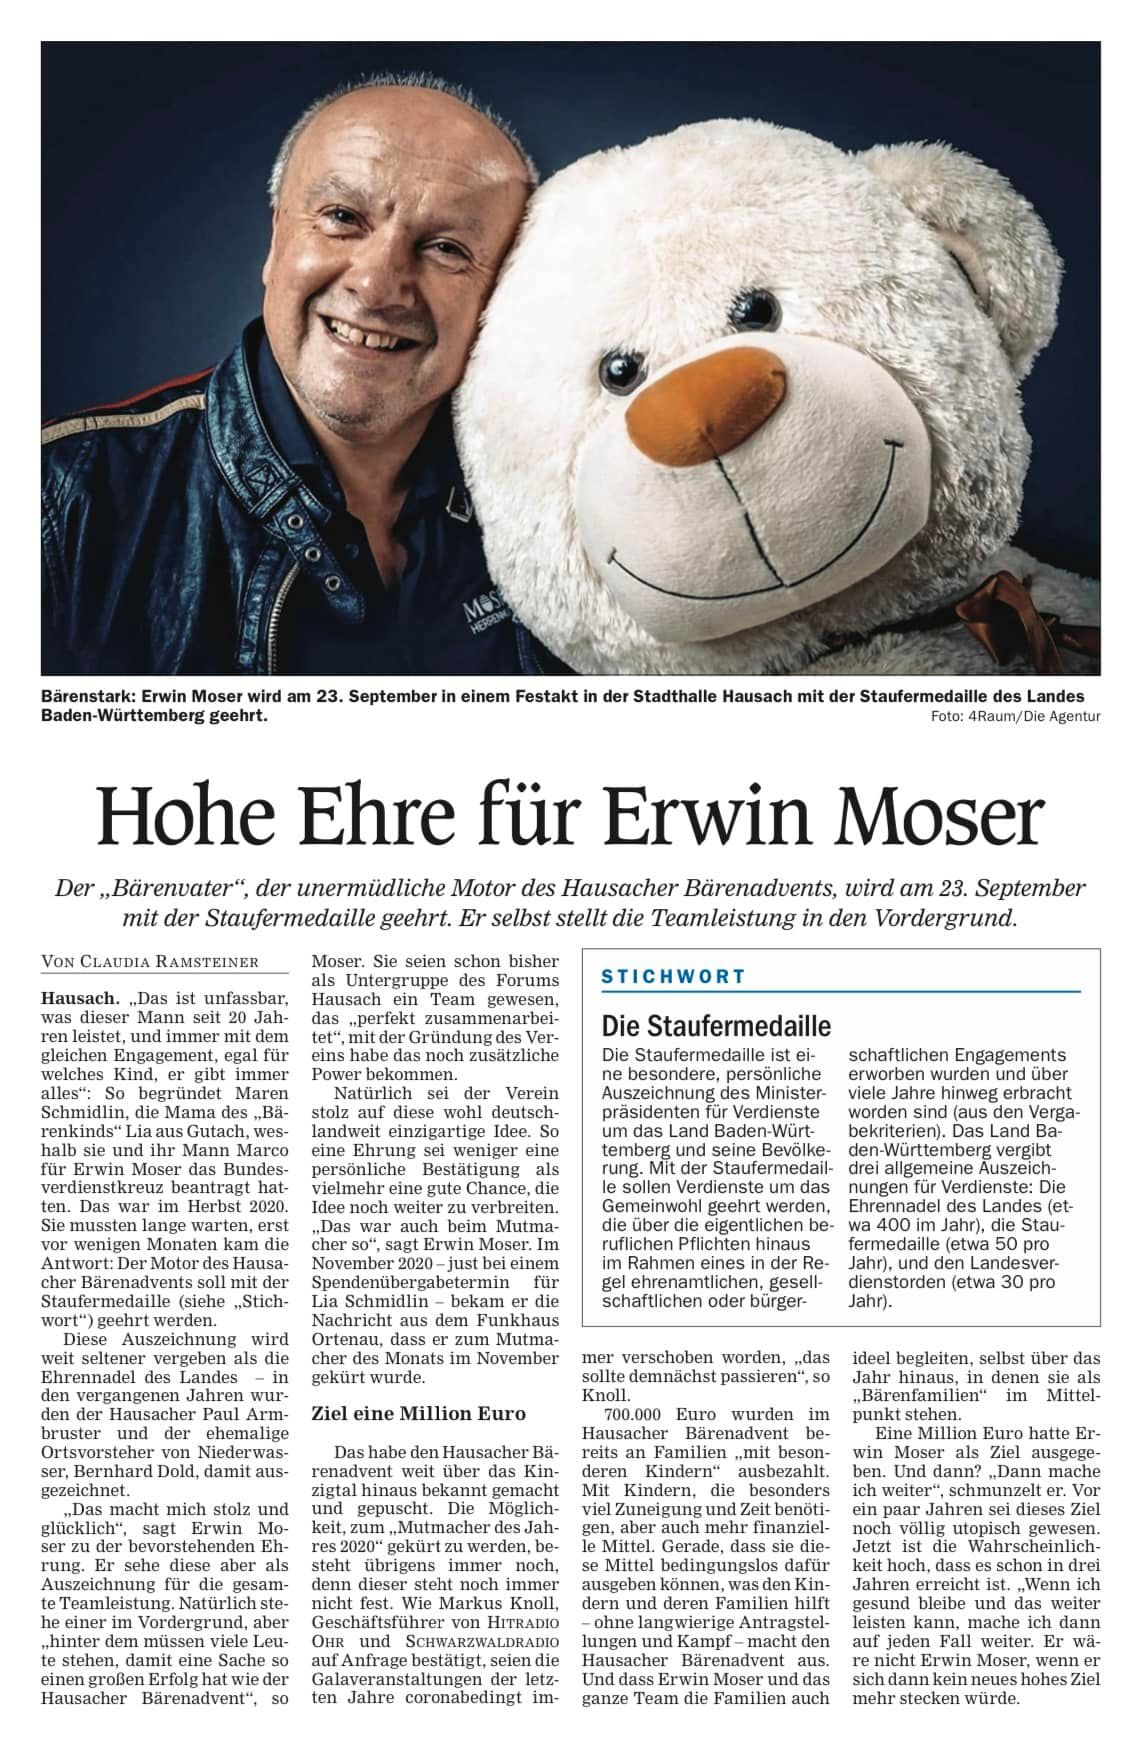 Hohe Ehre für Erwin Moser – Artikel des Offenburger Tageblatts